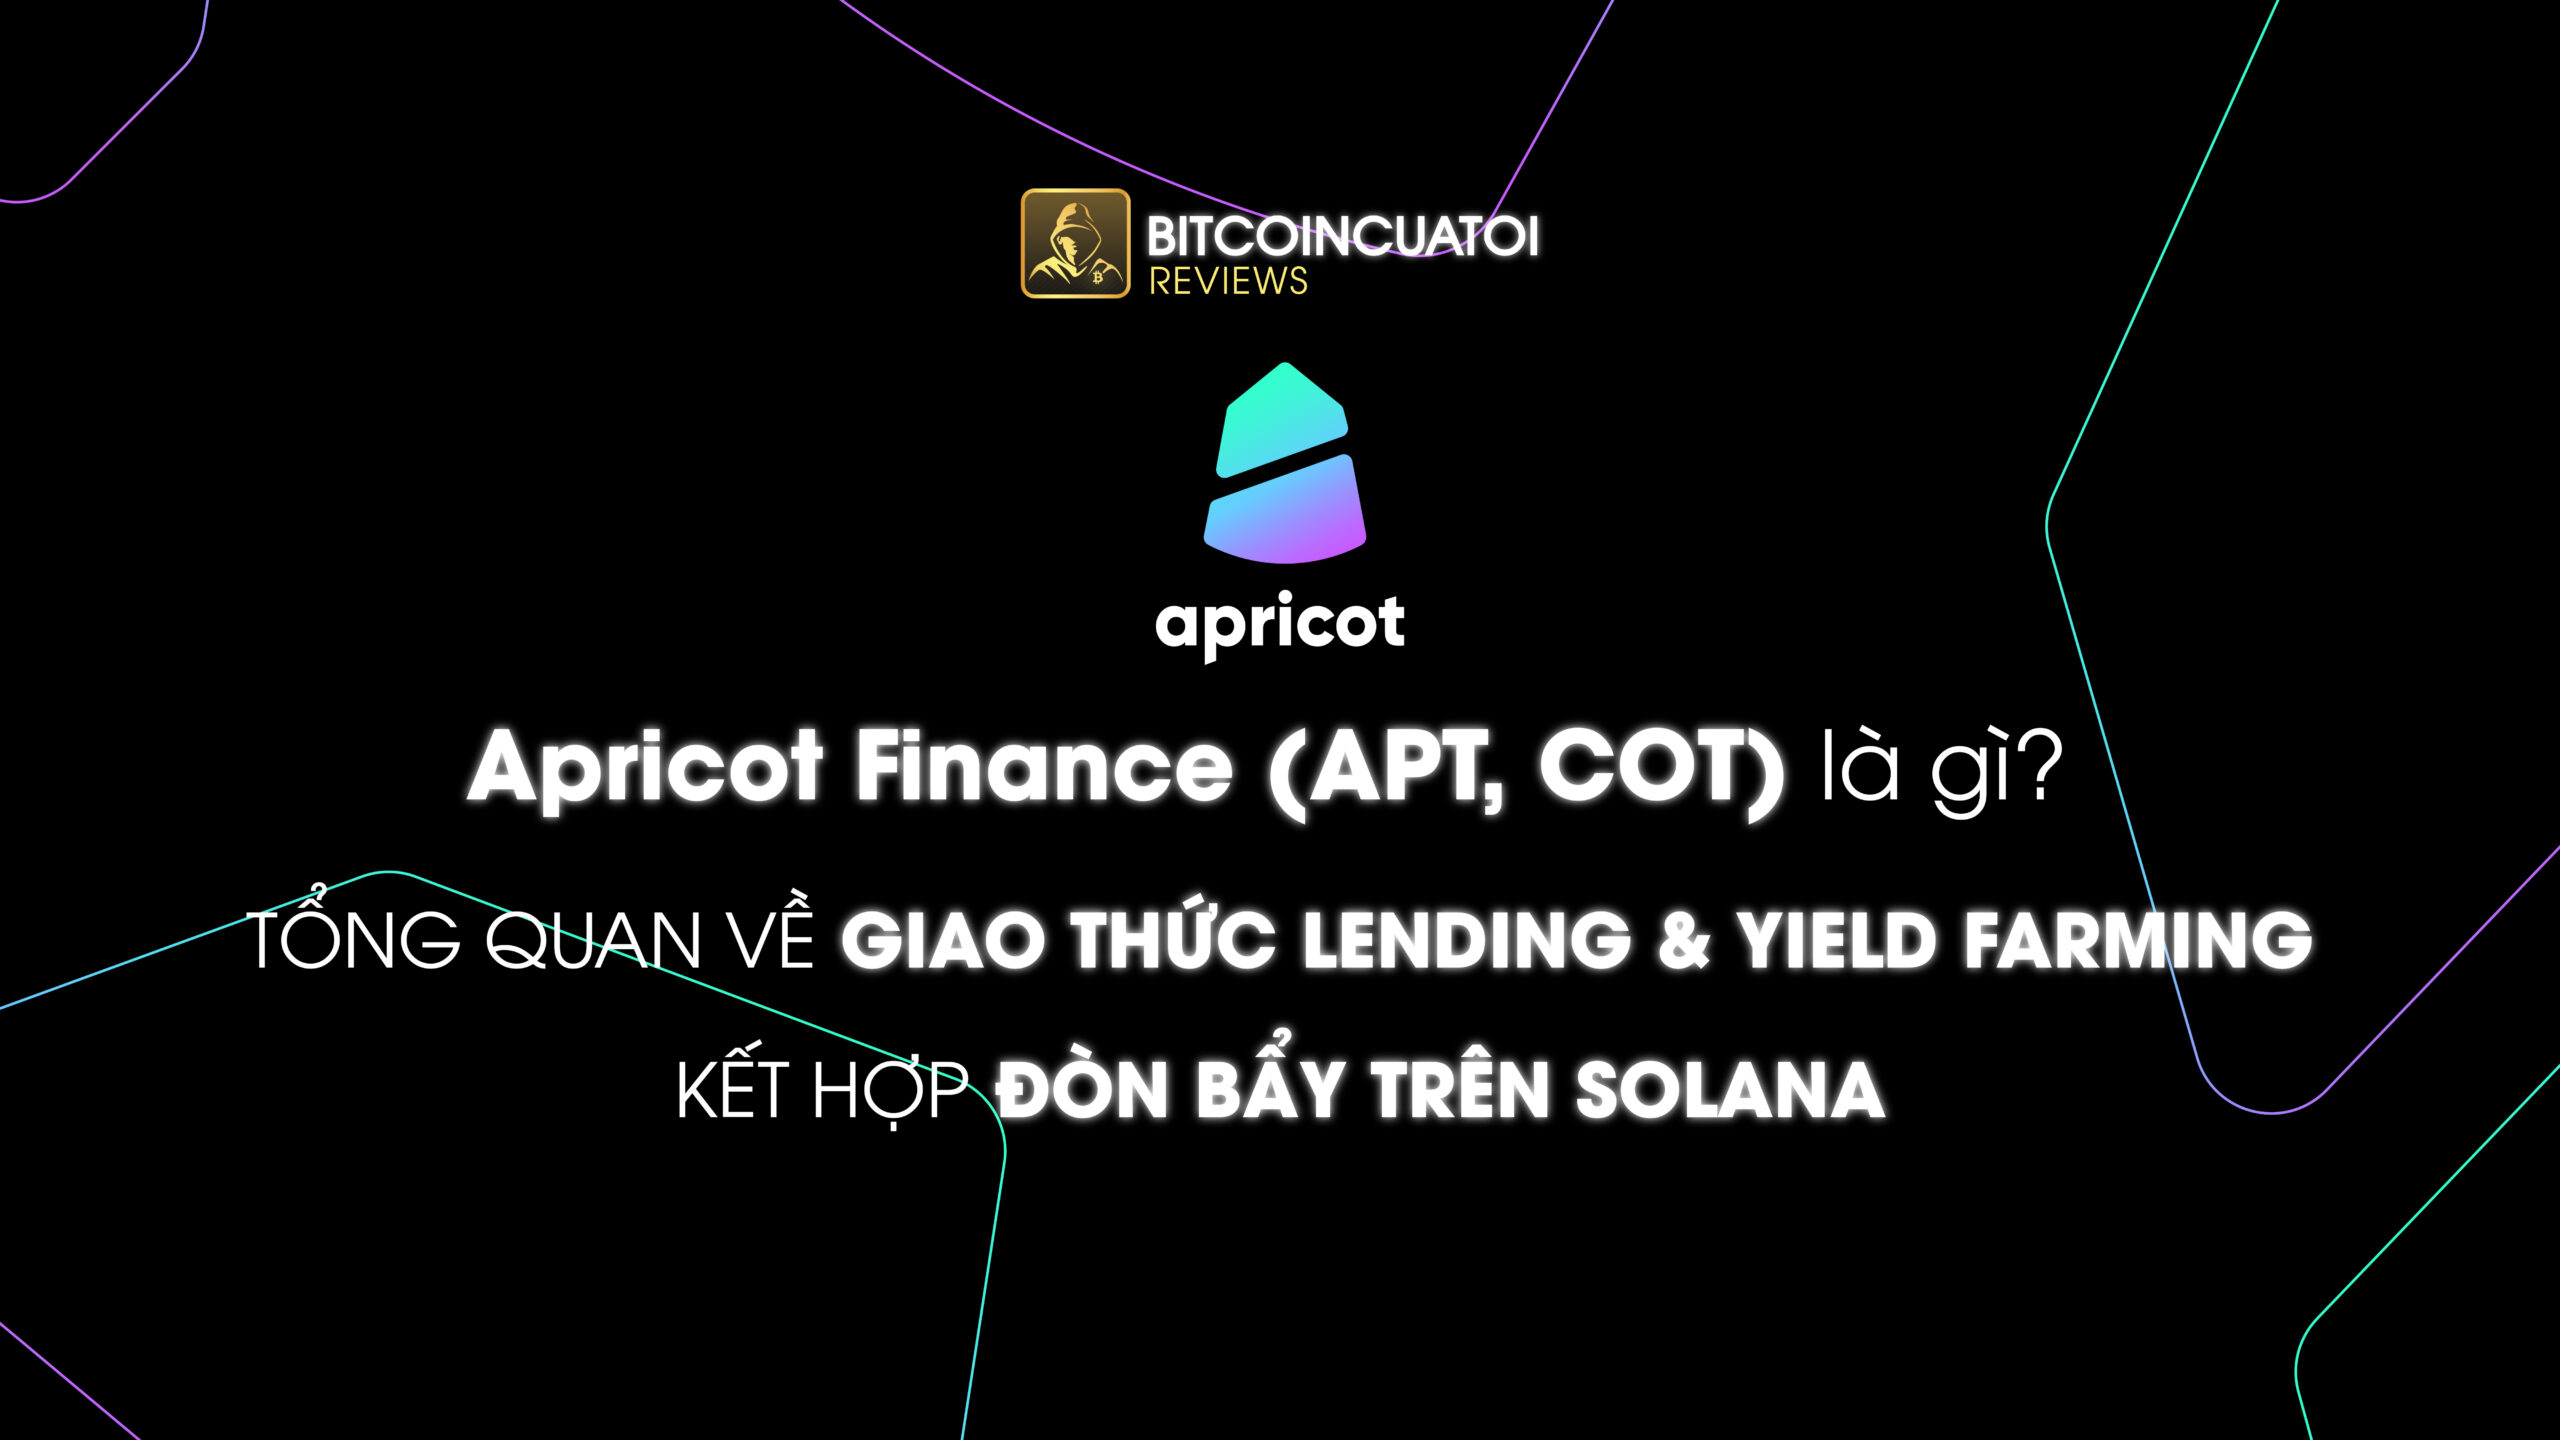 Apricot Finance (APT, COT) là gì? Tổng quan về giao thức Lending & Yield Farming kết hợp đòn bẩy trên Solana